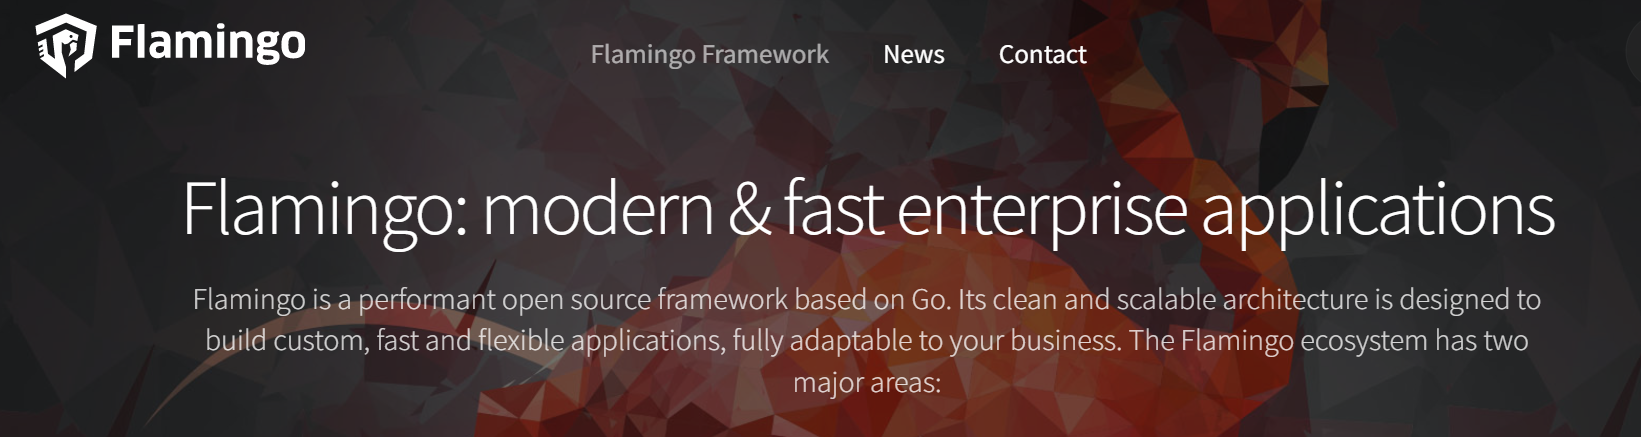 Flamingo Framework